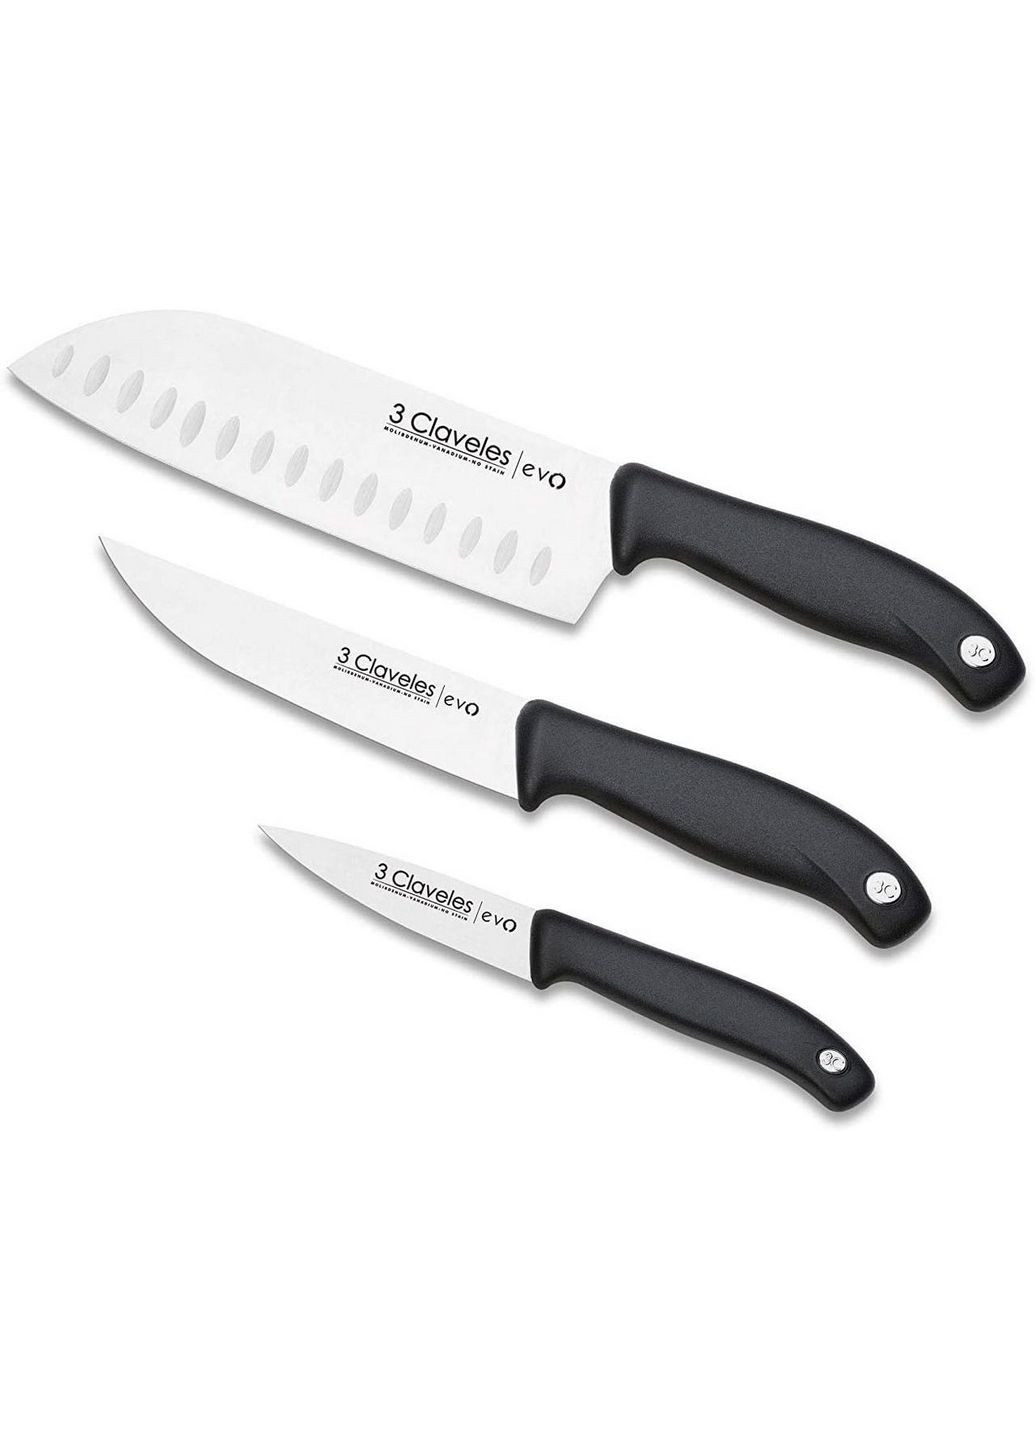 Набір із 3 кухонних ножів Evo 3 Claveles комбінований,